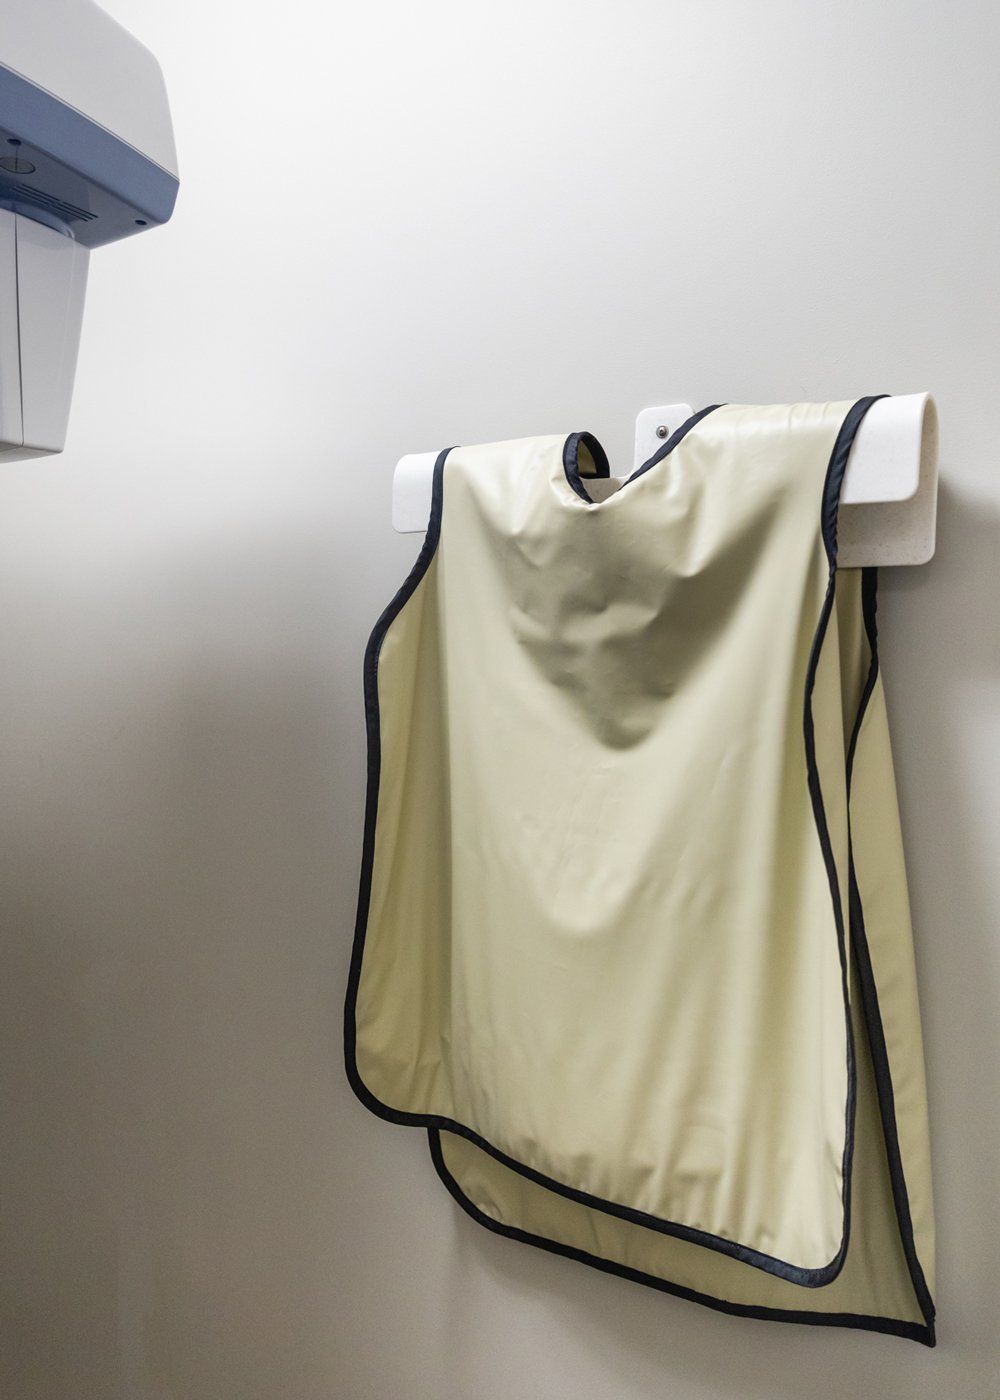 Teeth Extractions — Patient's Vest in Jasper, IN